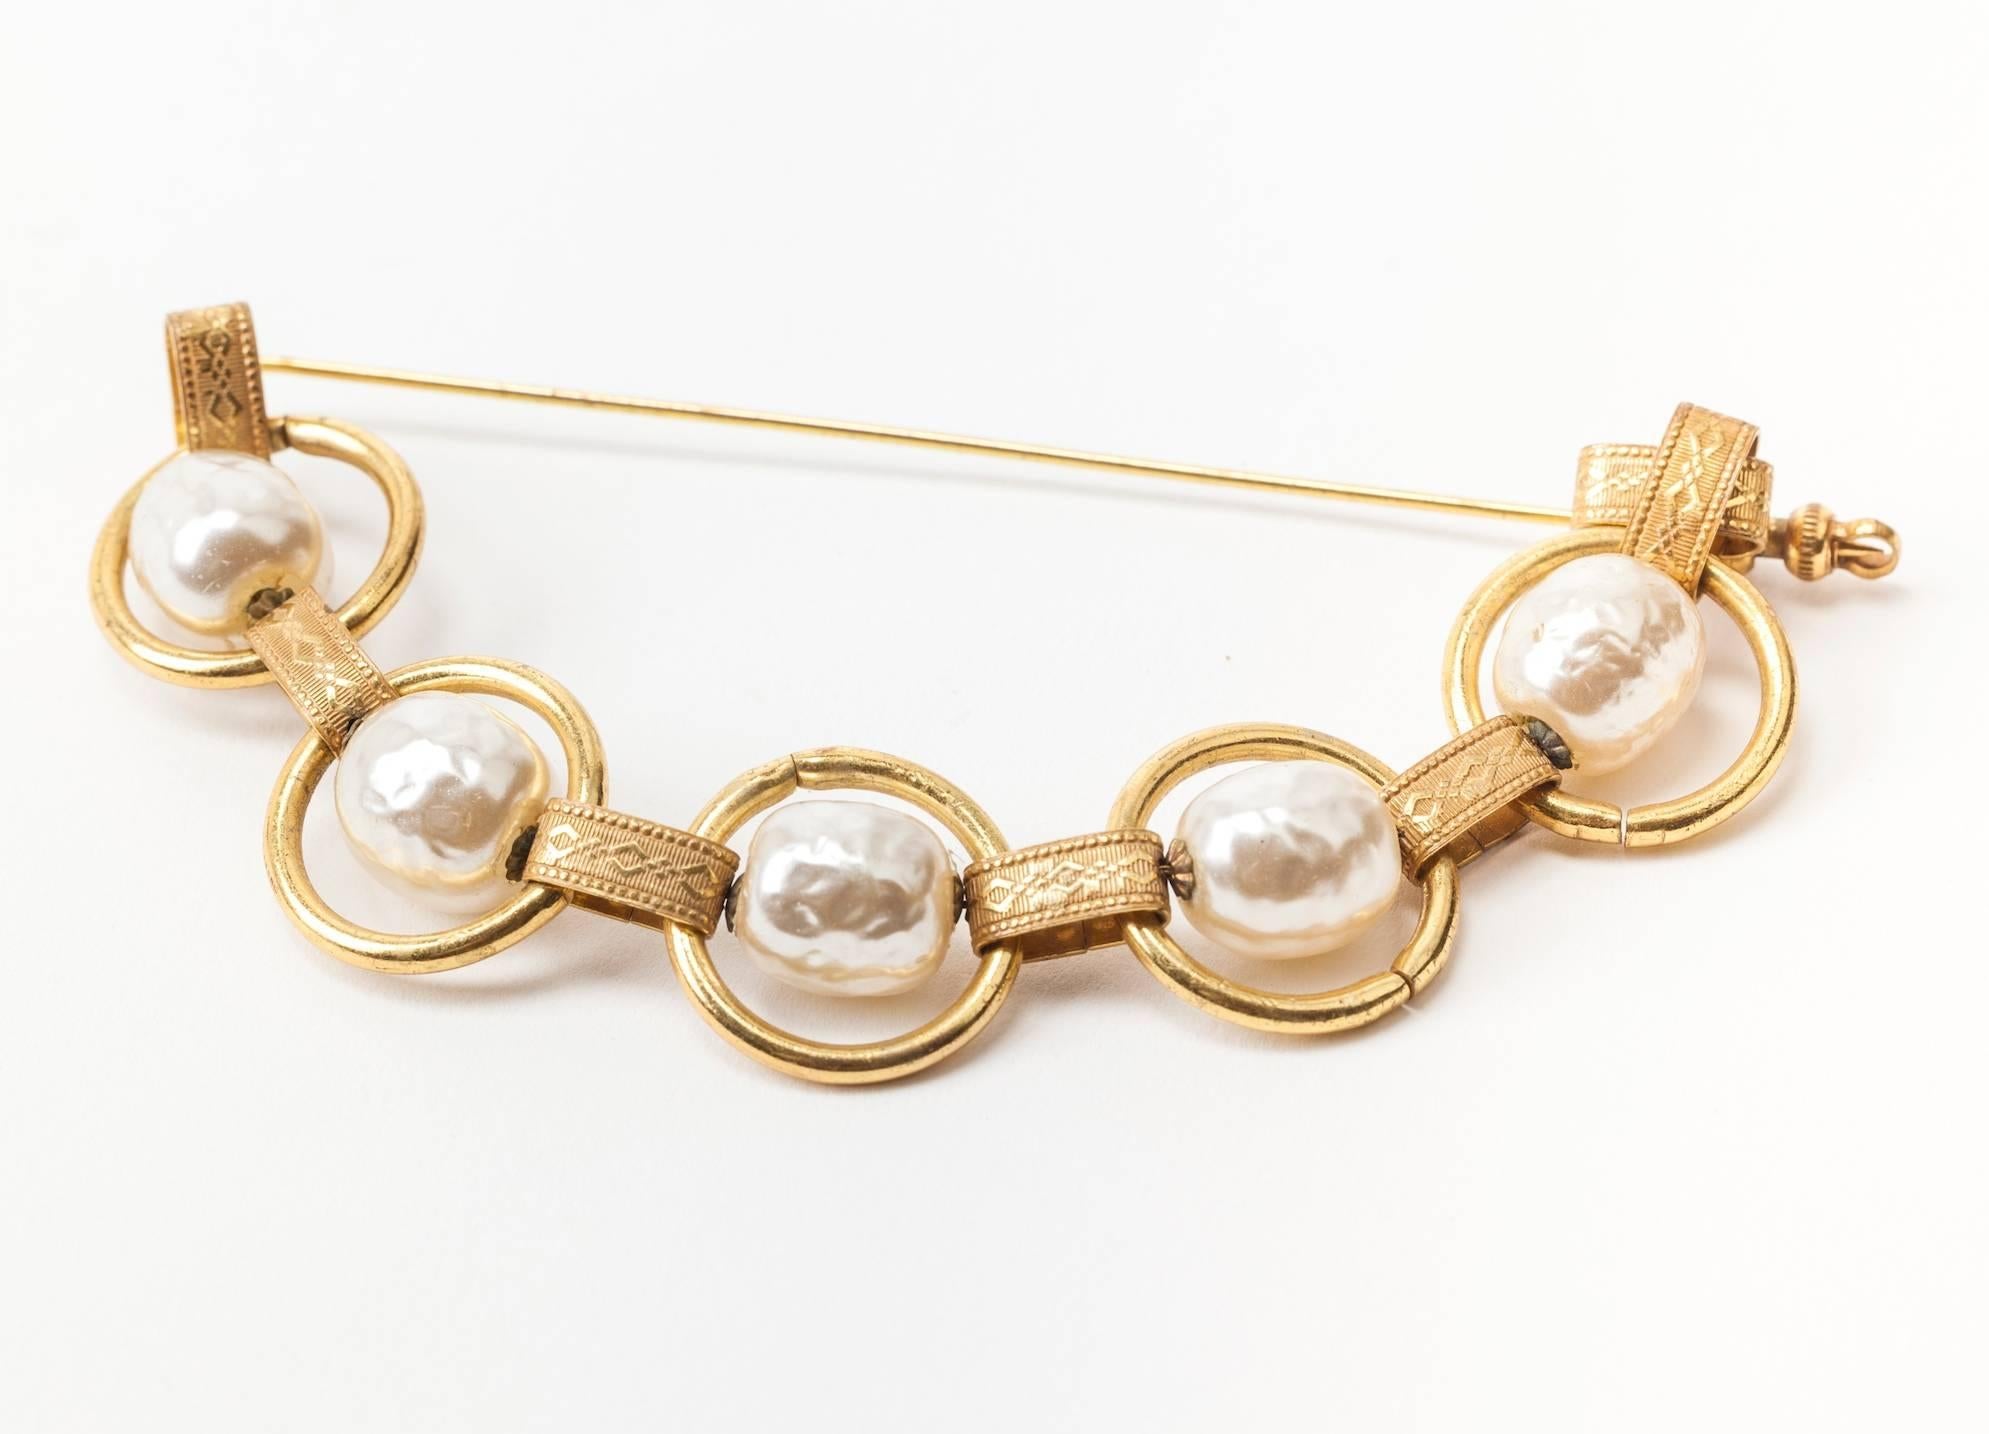 Insolite, grande broche à épingle à nourrice en deux parties, réalisée par Miriam Haskell, composée de grandes perles baroques caractéristiques et d'un maillon de chaîne doré russe élaboré. L'épingle disparaît dans le tissu lorsqu'elle est portée.